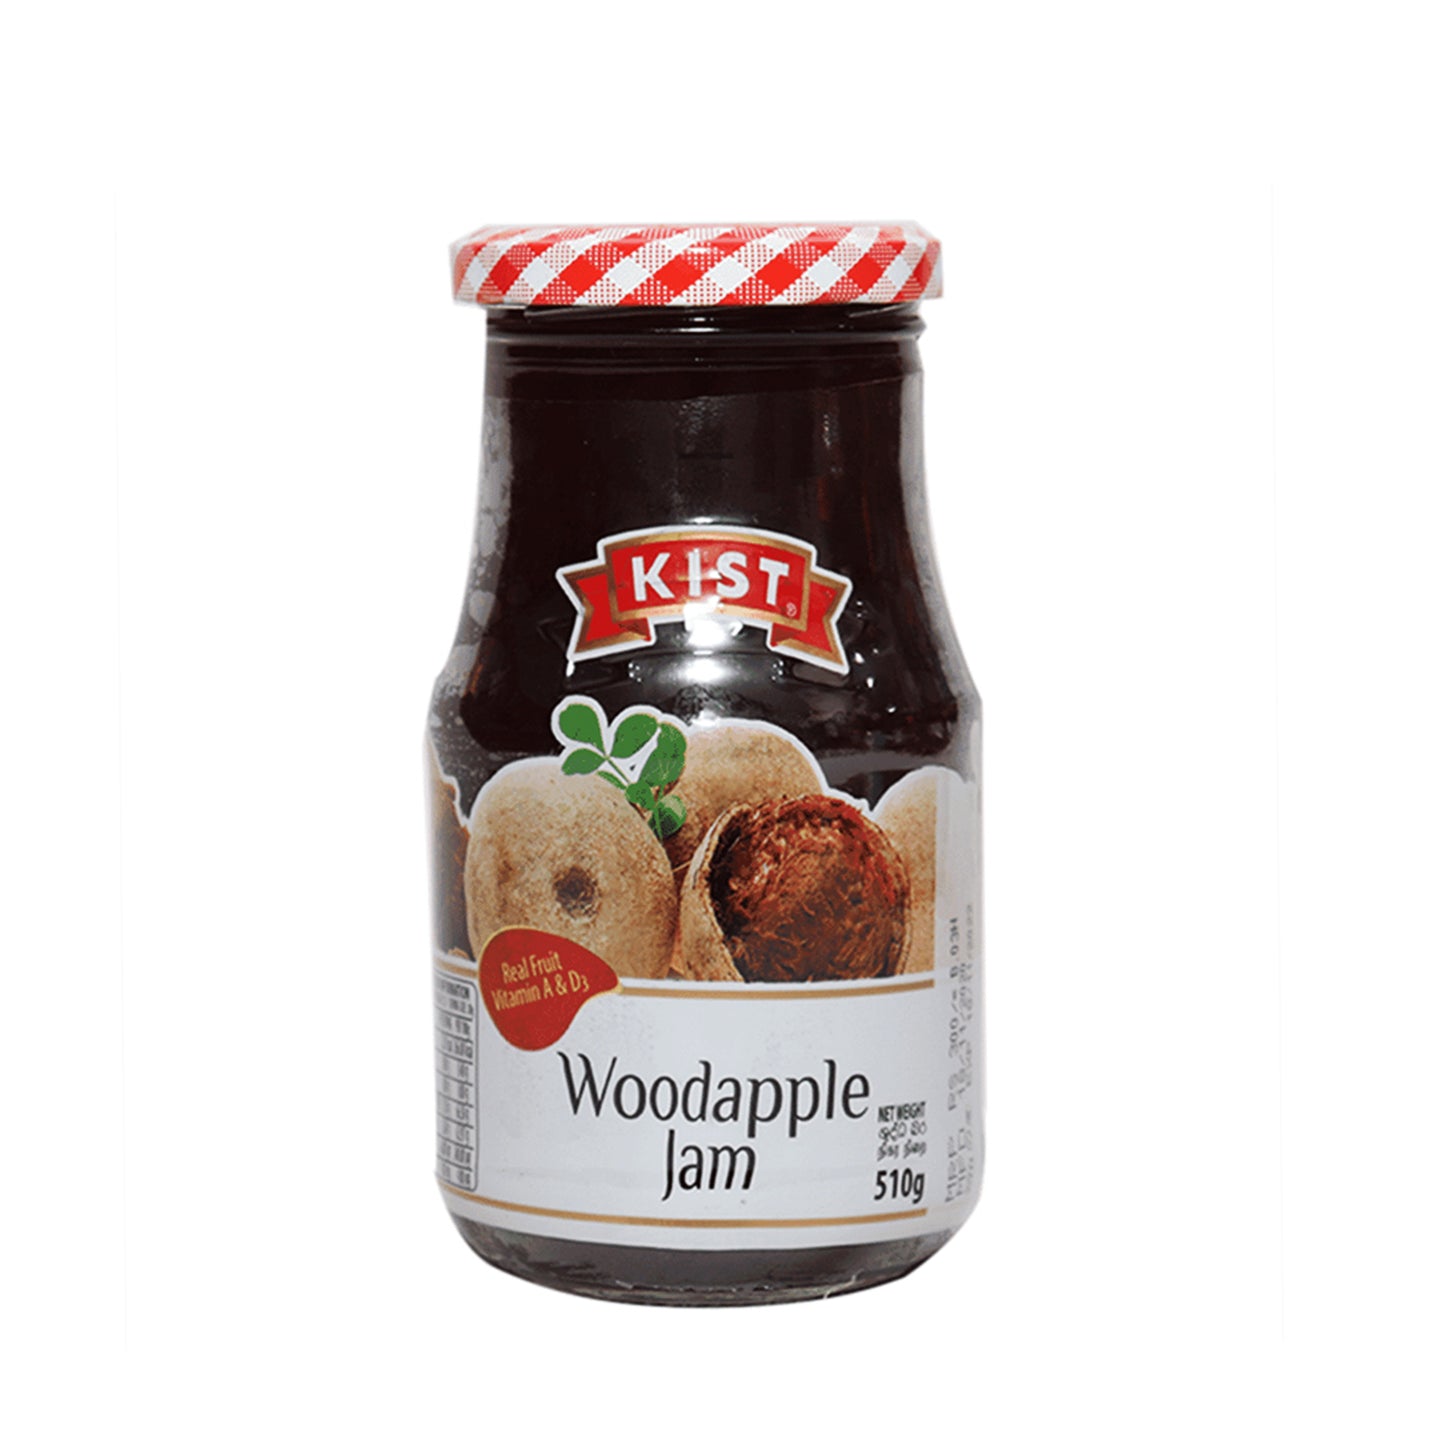 Kist Wood Apple Jam (510g)